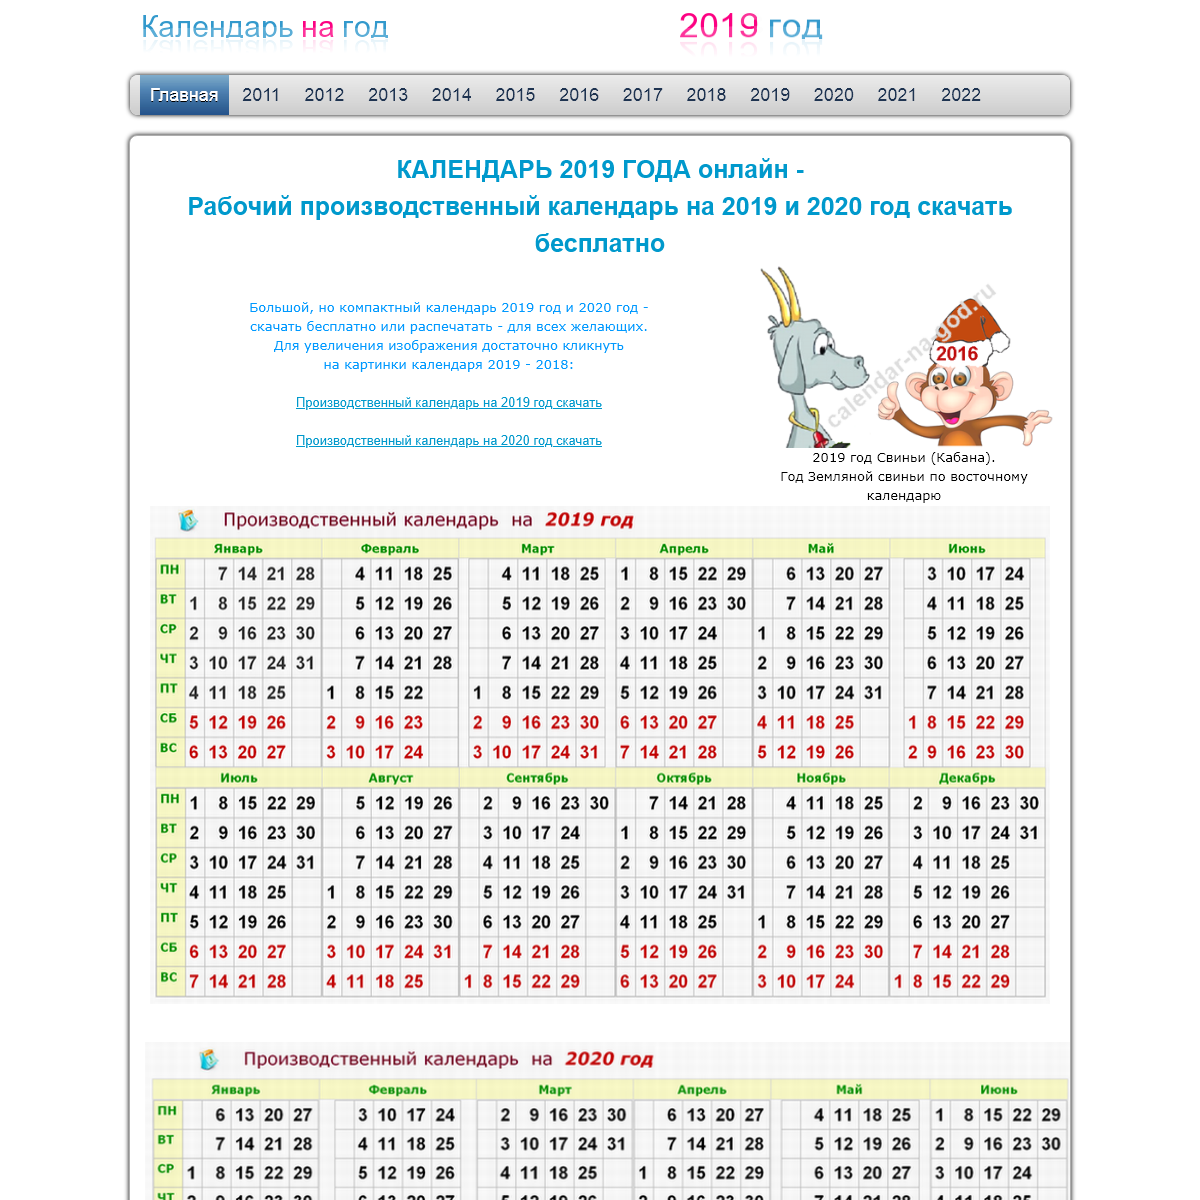 A complete backup of calendar-na-god.ru